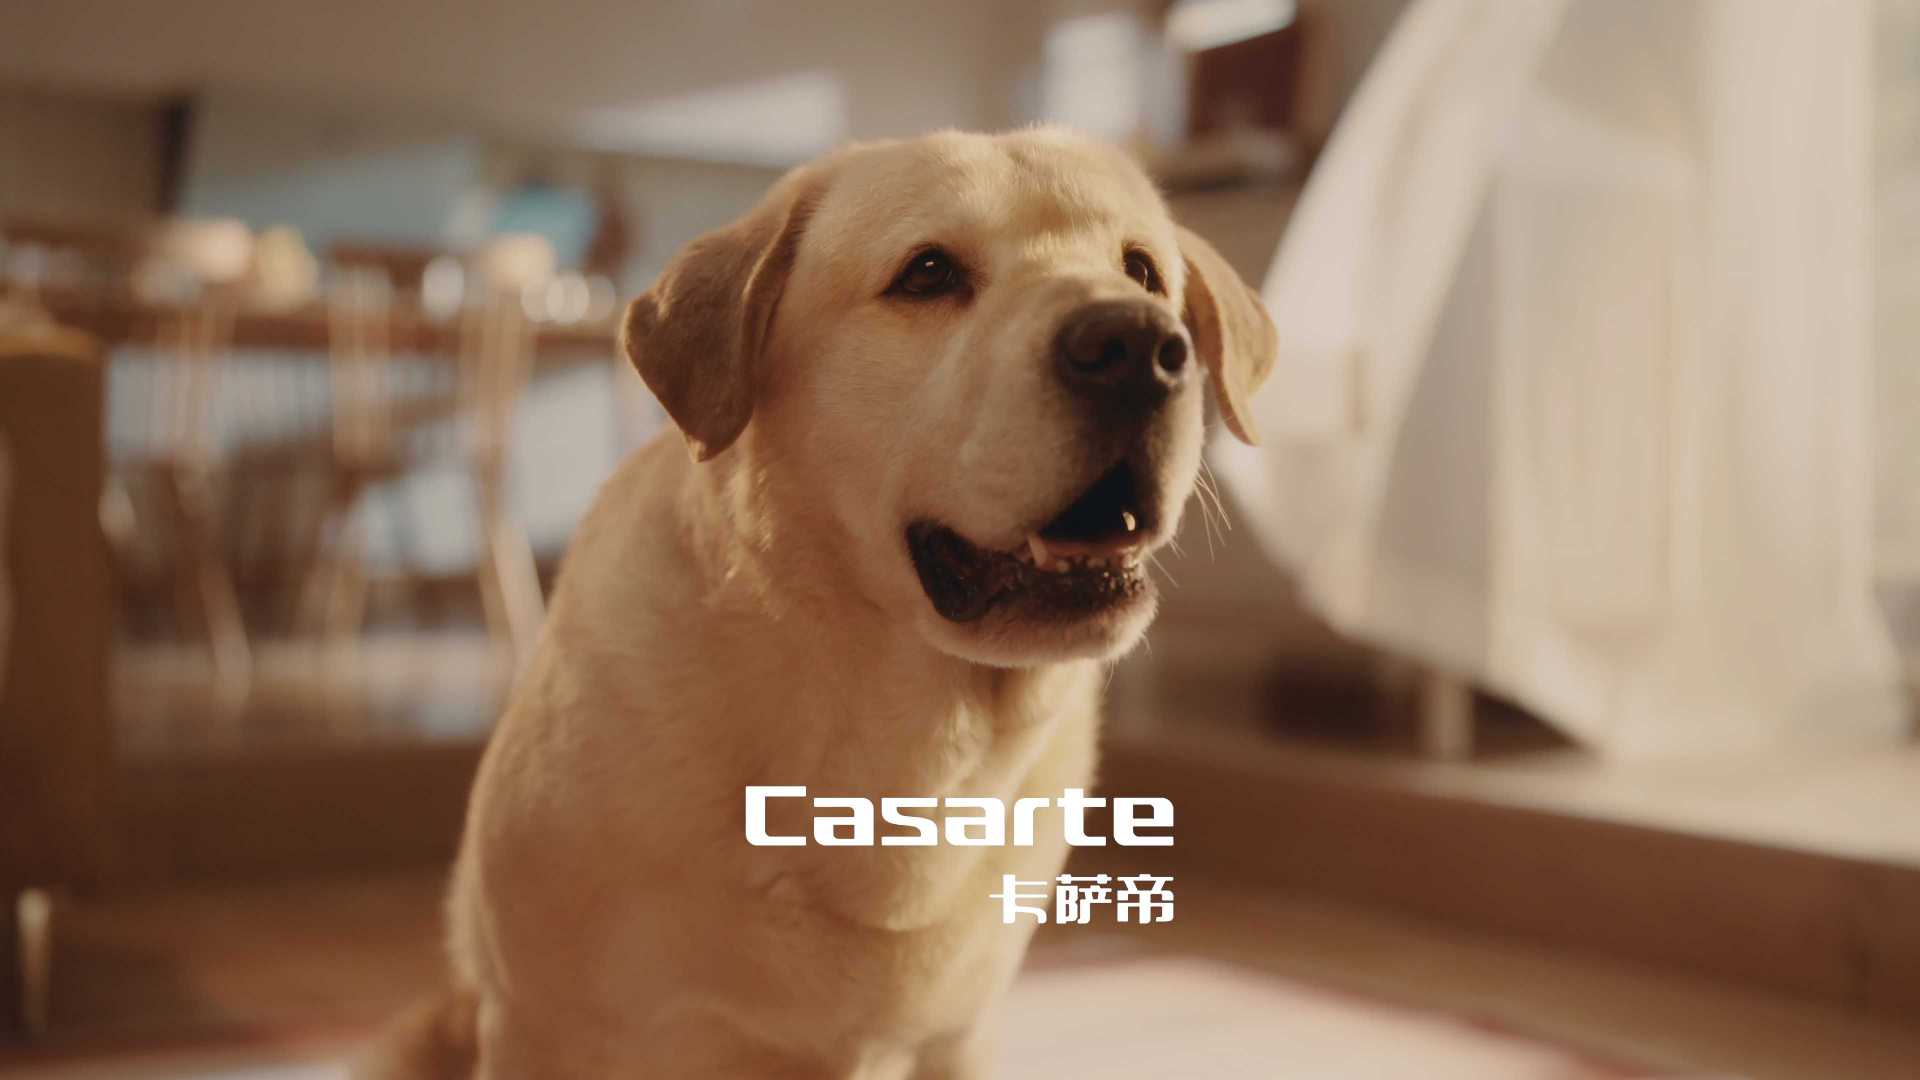 卡萨帝 Casarte 艺术电视 M60「 真的 」可以｜狗狗篇